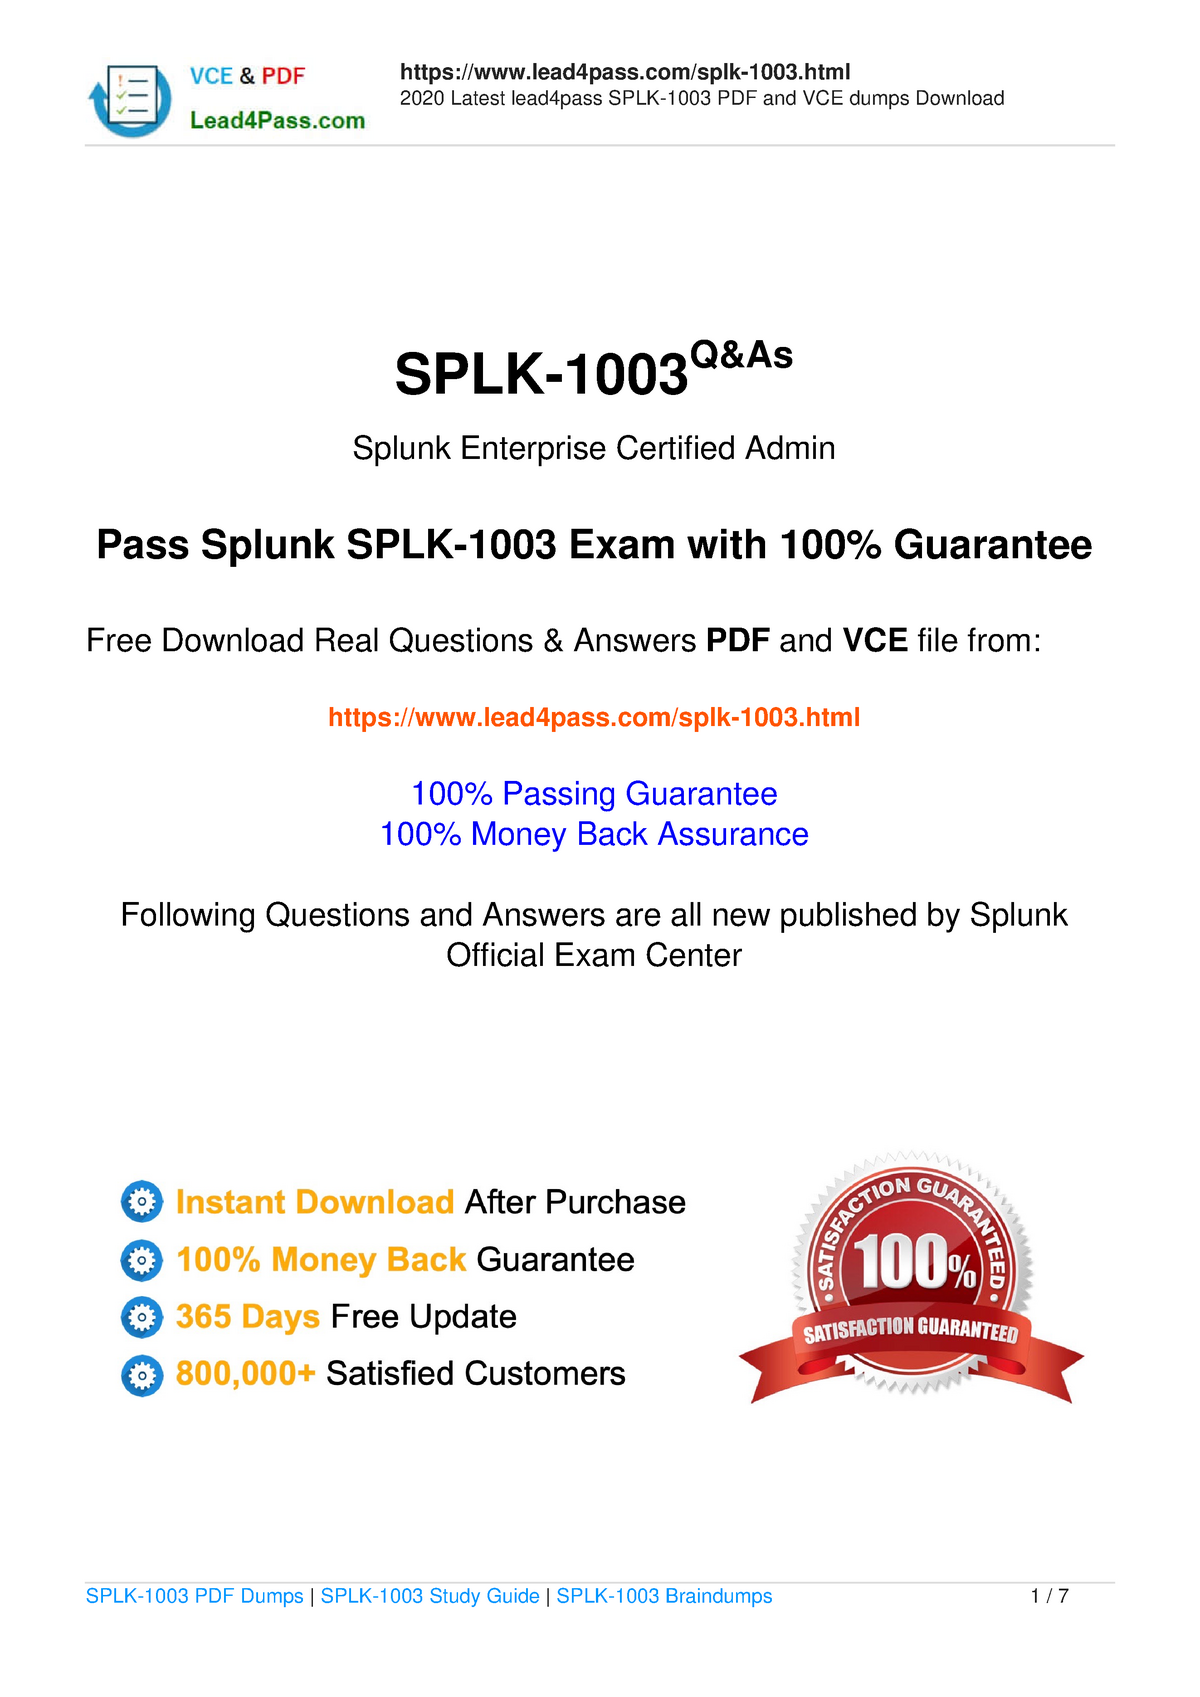 SPLK-1003 Musterprüfungsfragen